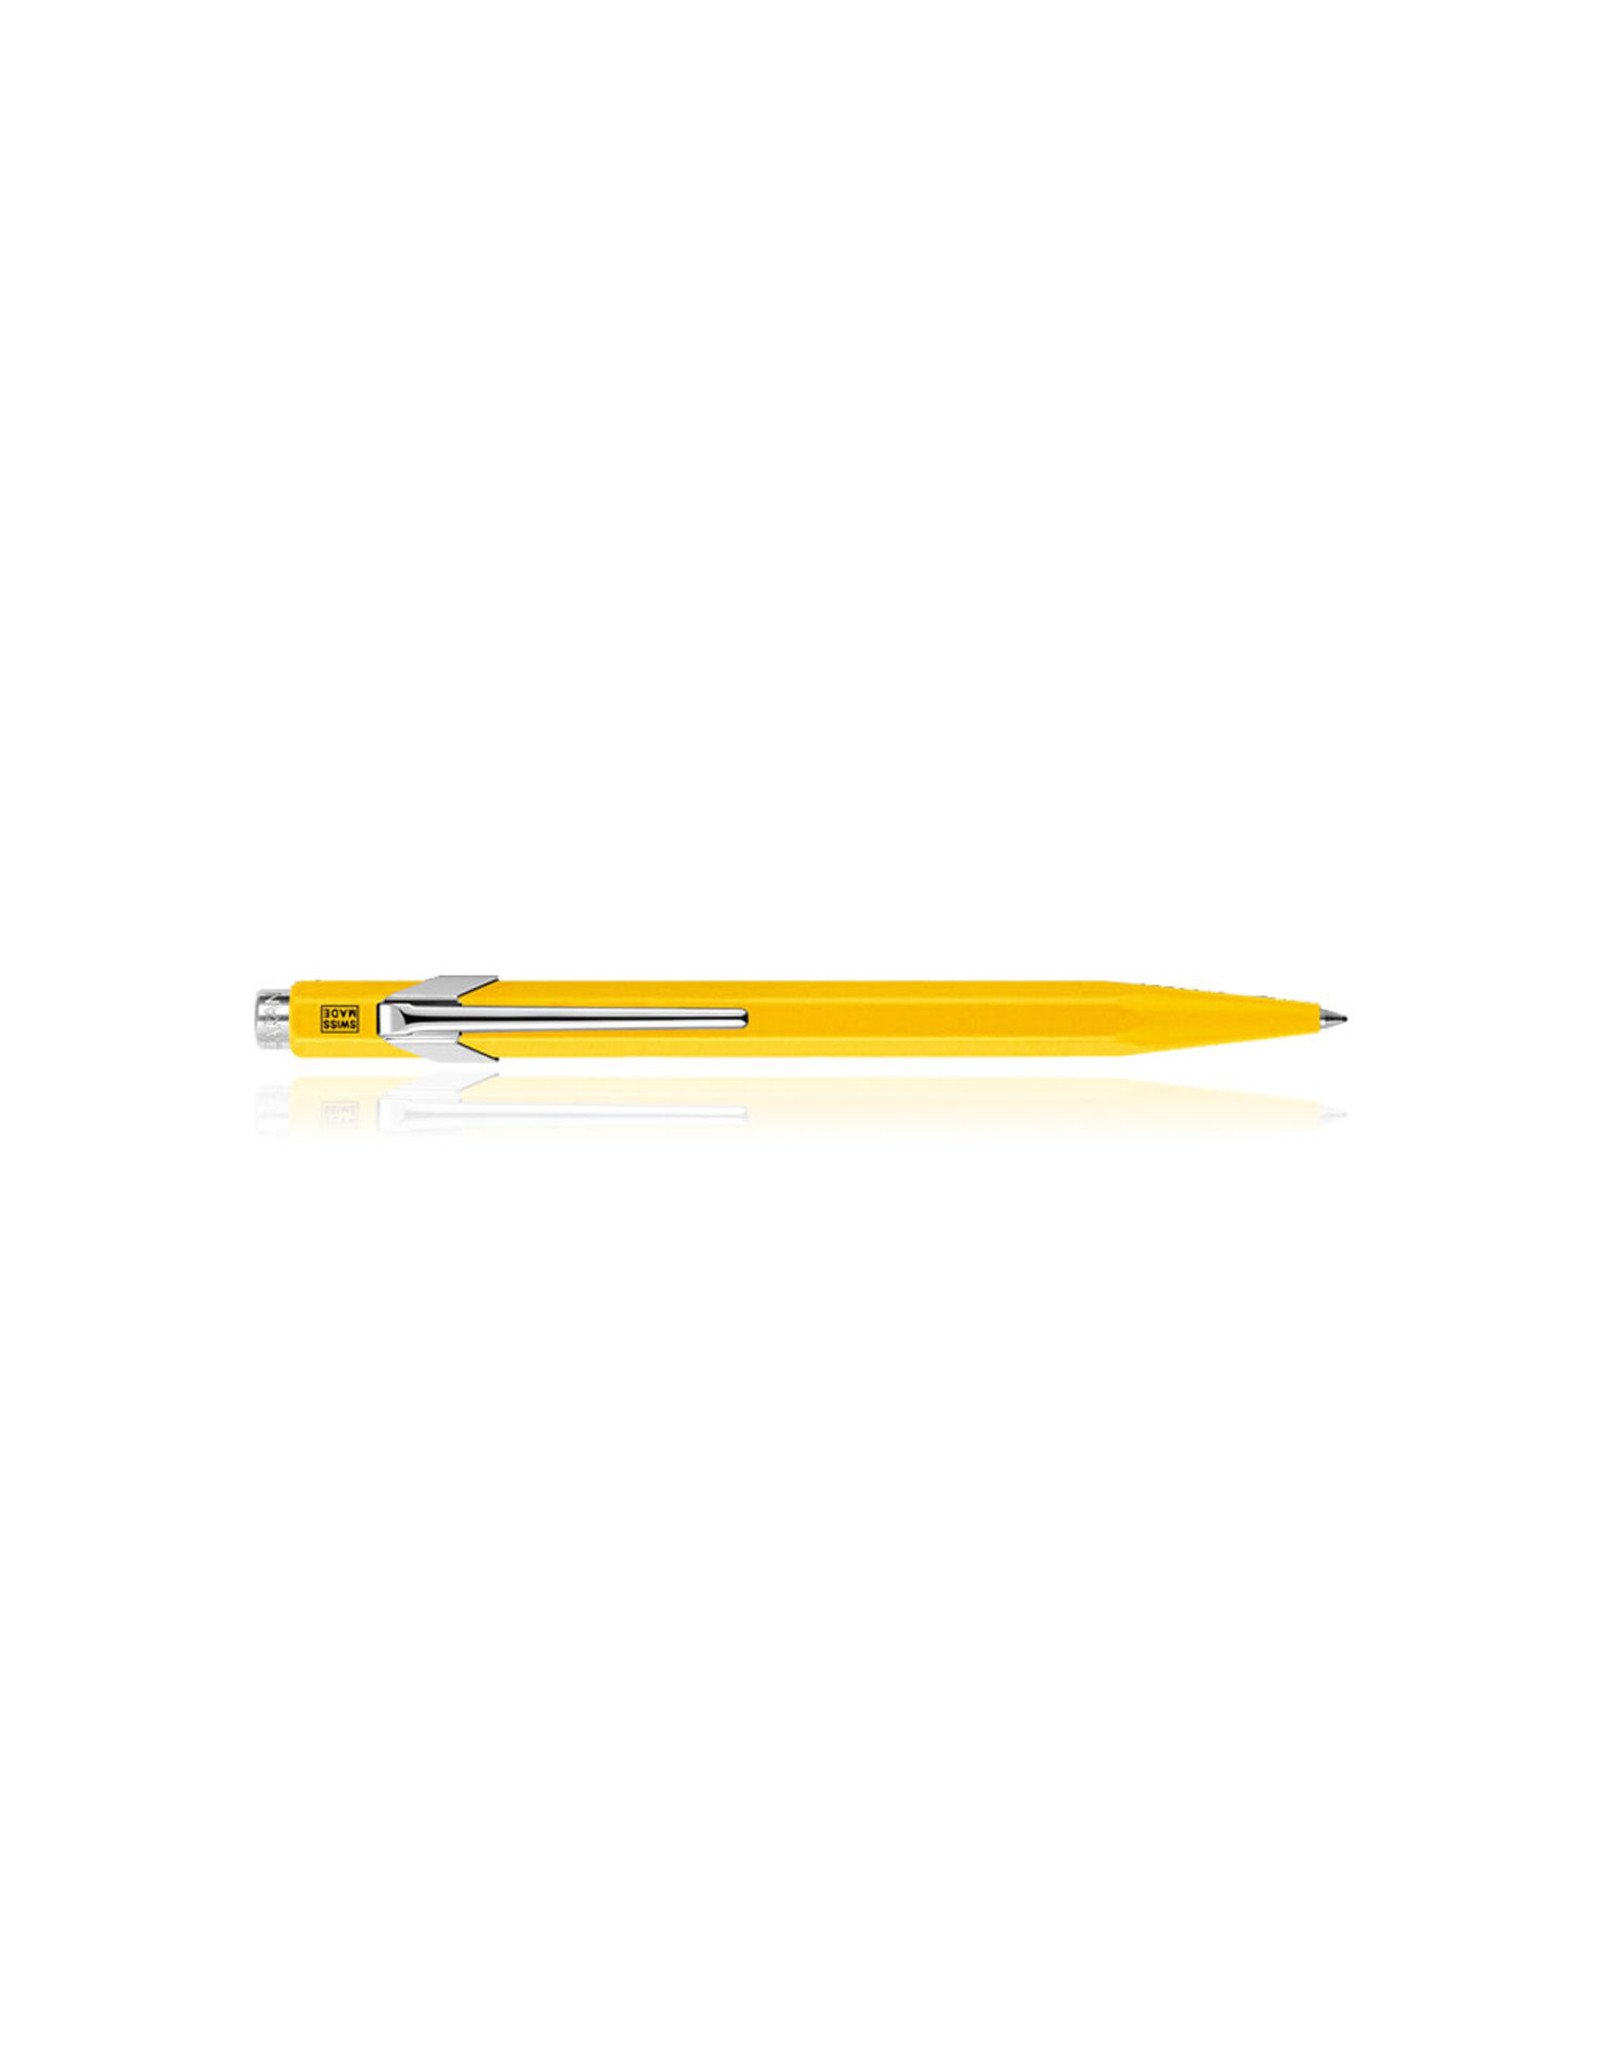 Caran d'Ache Ballpoint Pen, 849 Series, Yellow